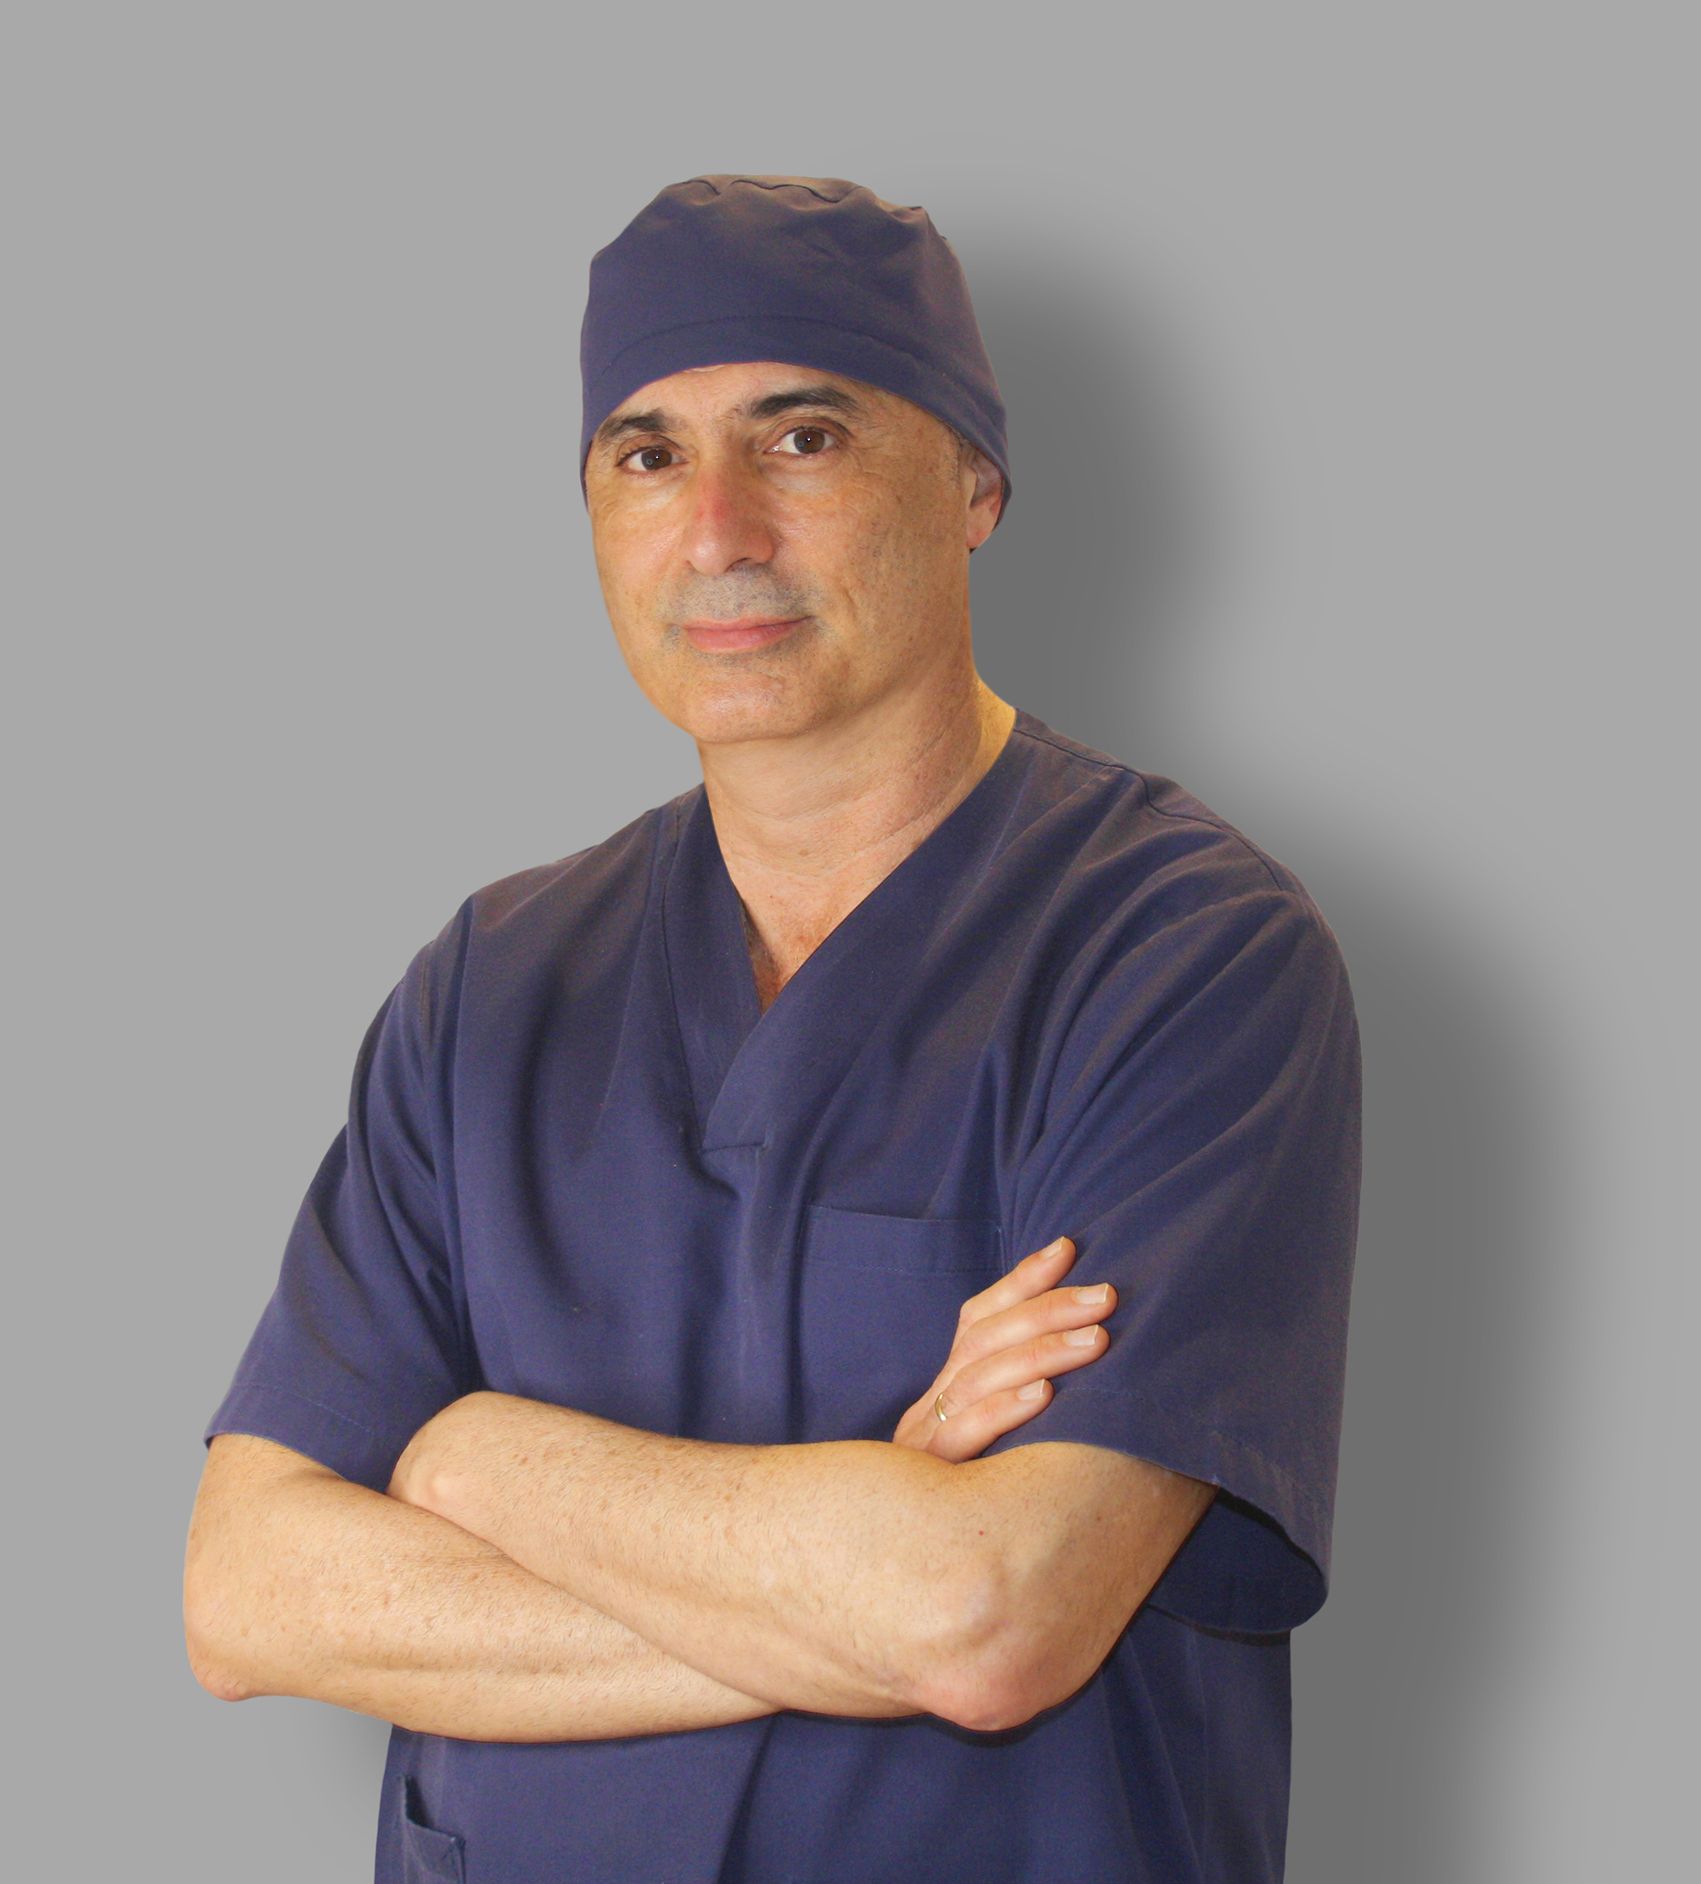 El doctor Ruiz Solanes de nuevo reconocido como mejor cirujano capilar de España